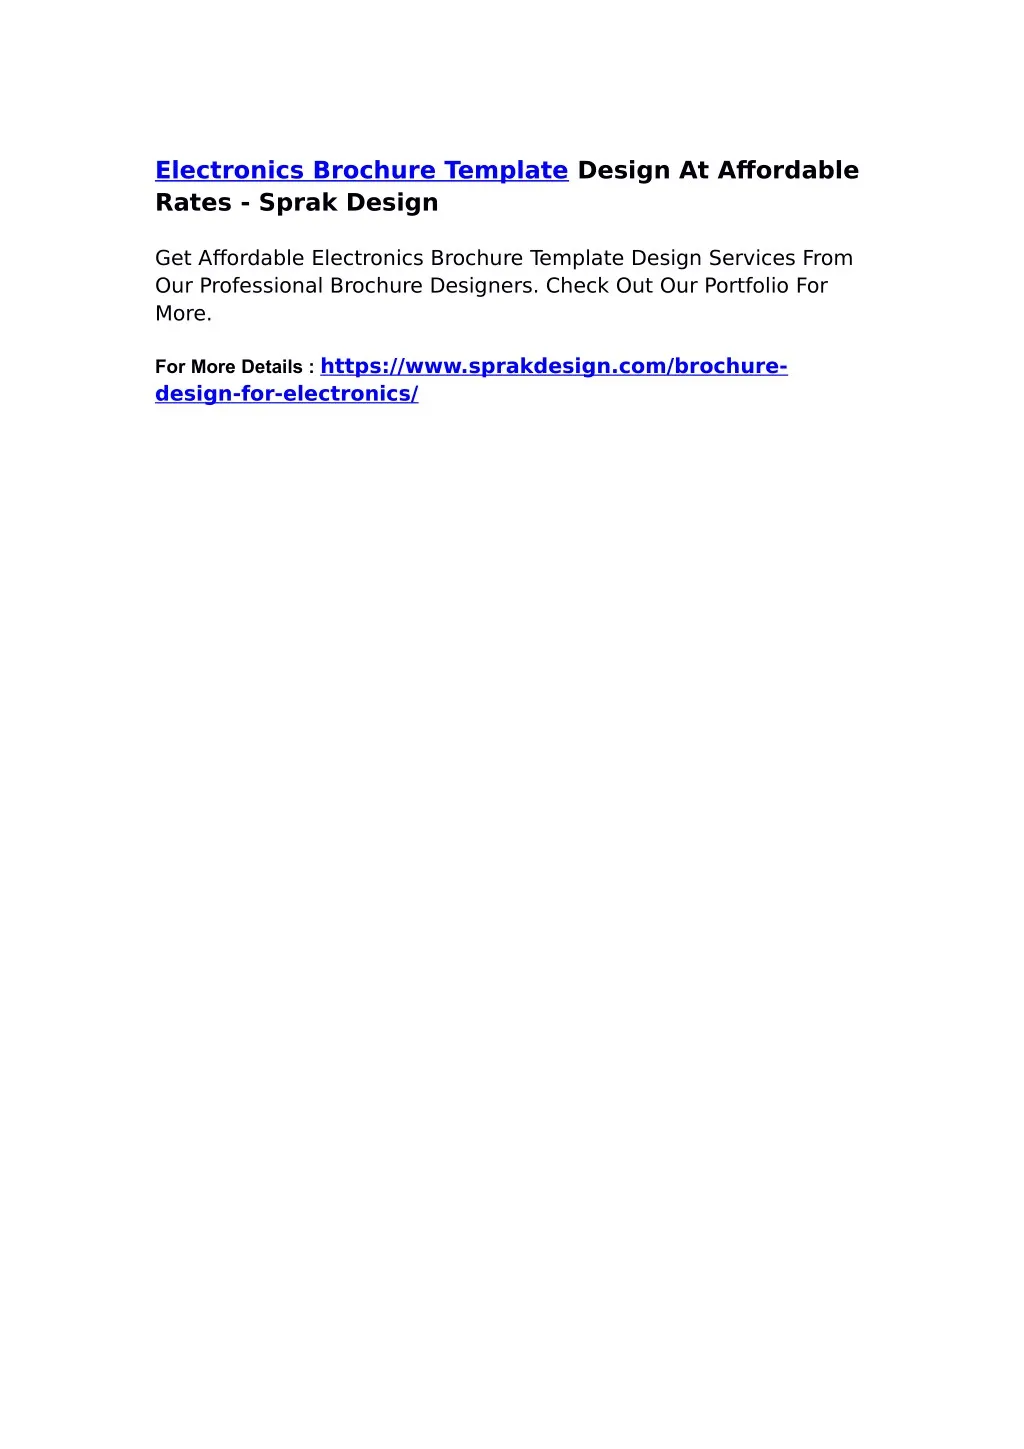 electronics brochure template design